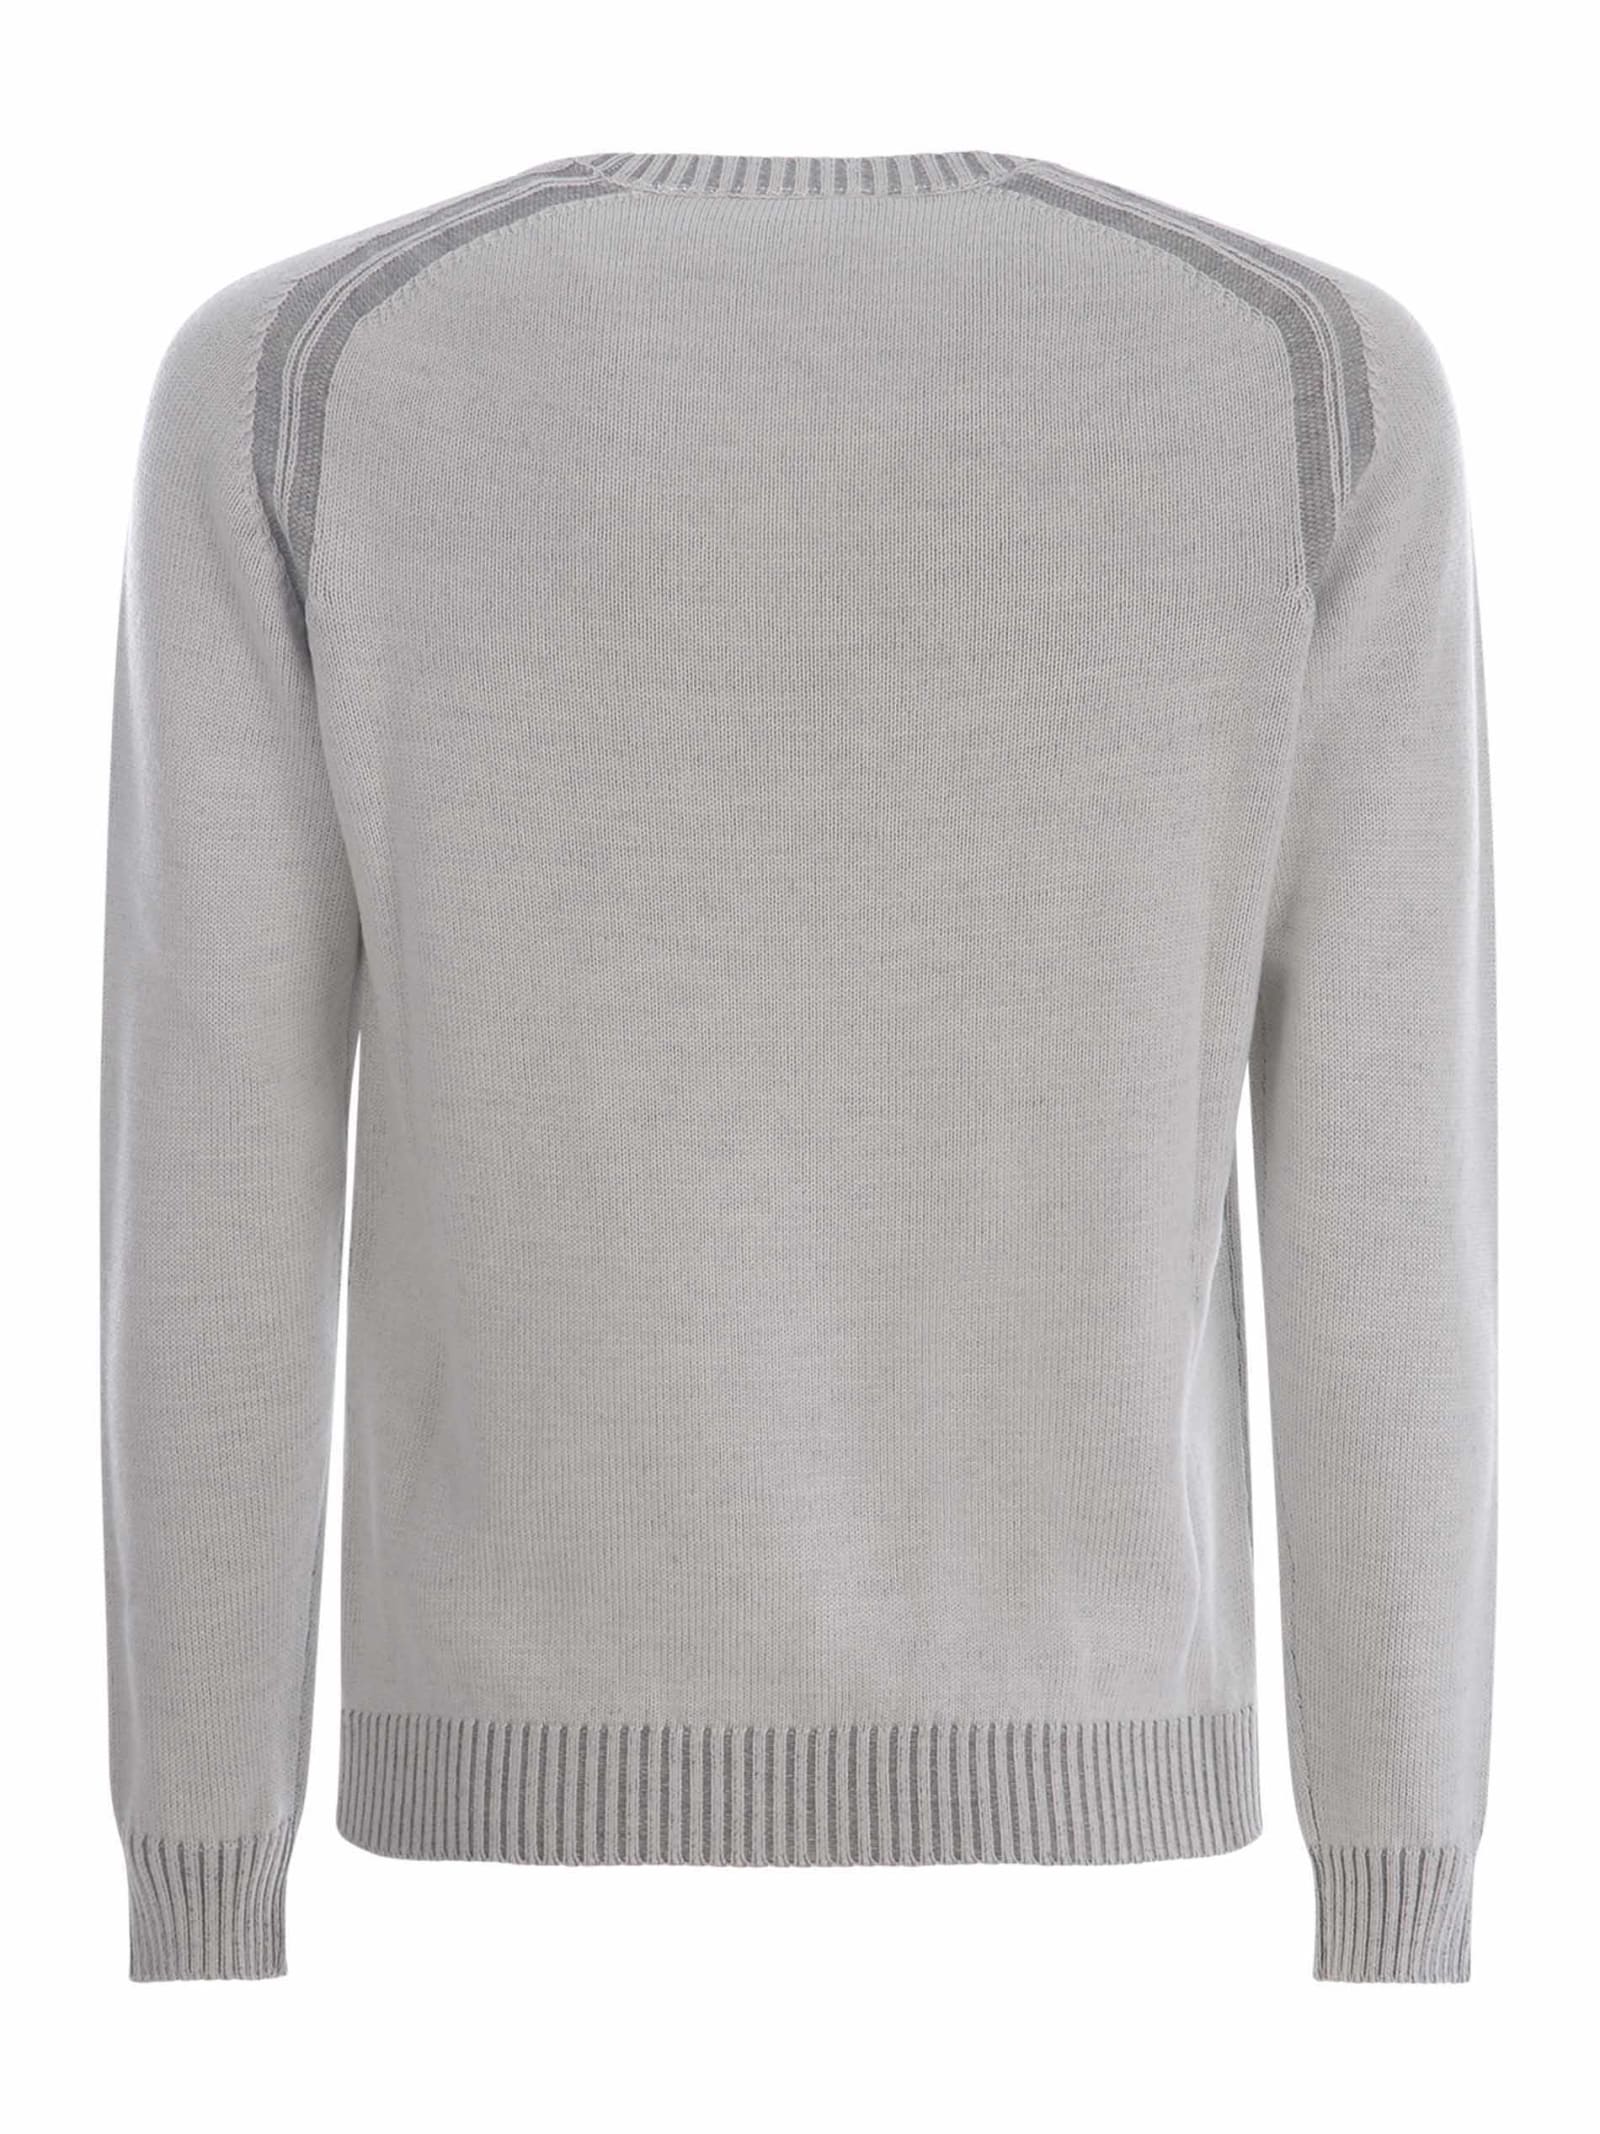 Shop Jeordie's Sweater Jeordies In Merino Wool In Grigio